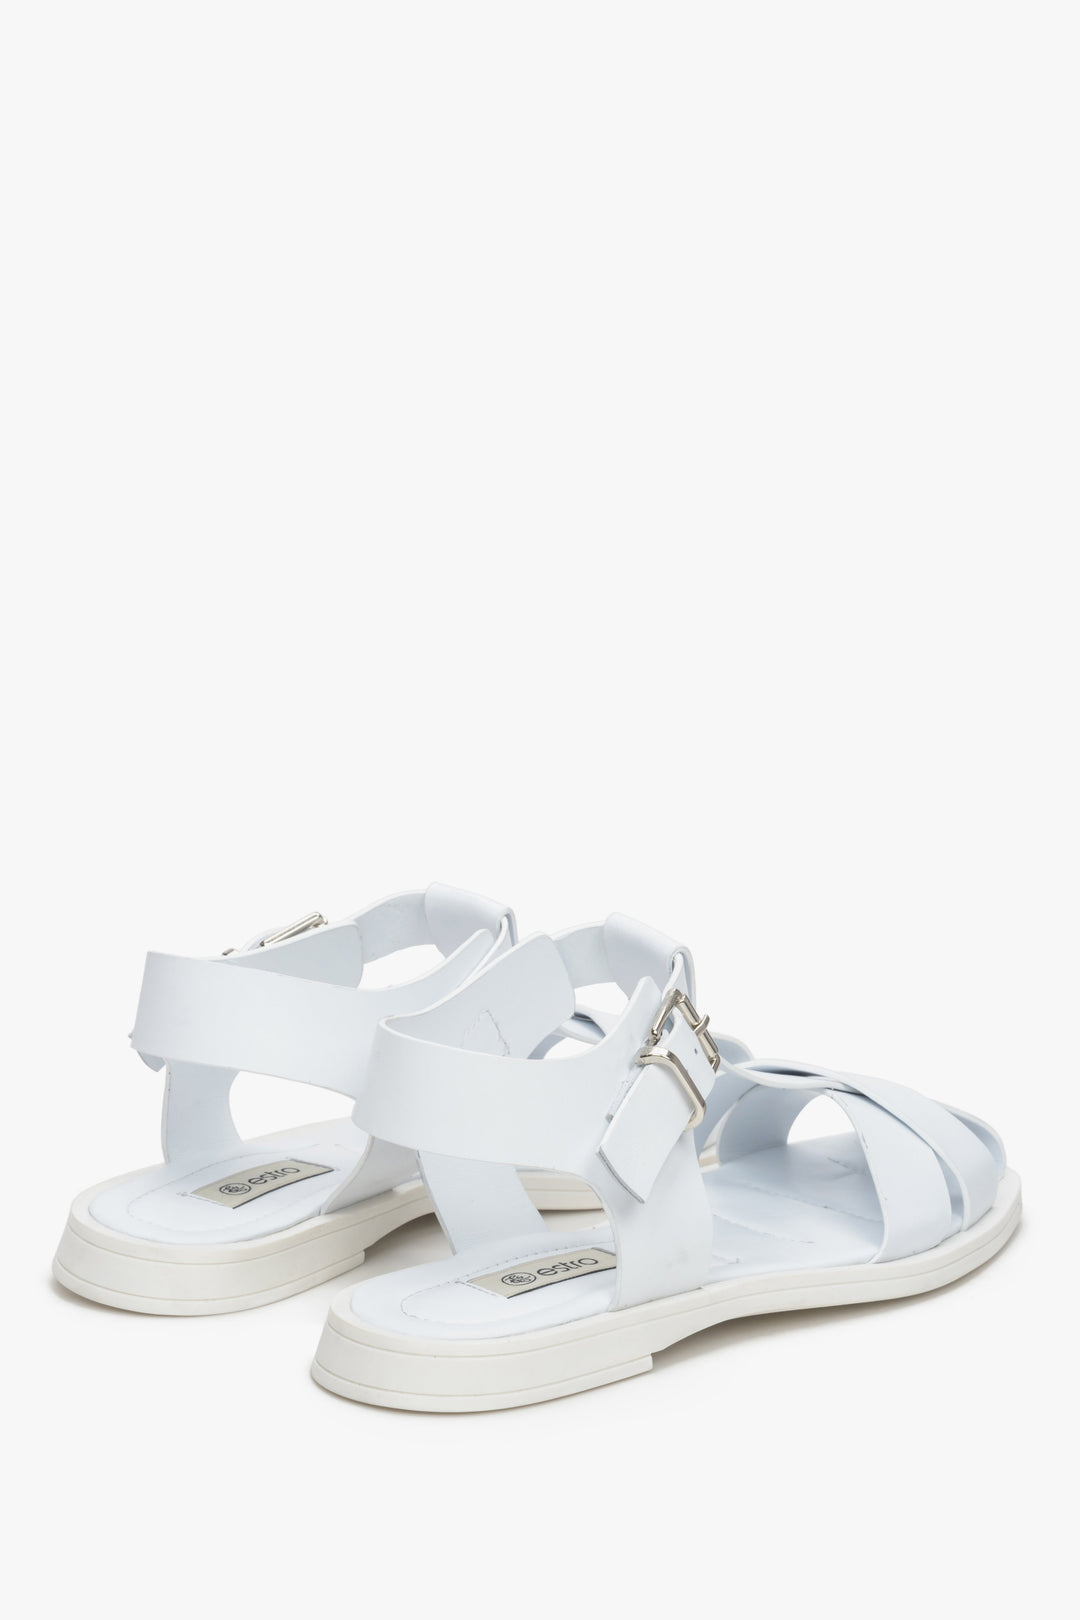 Białe, skórzane sandały damskie Estro - zbliżenie na tylną część butów.